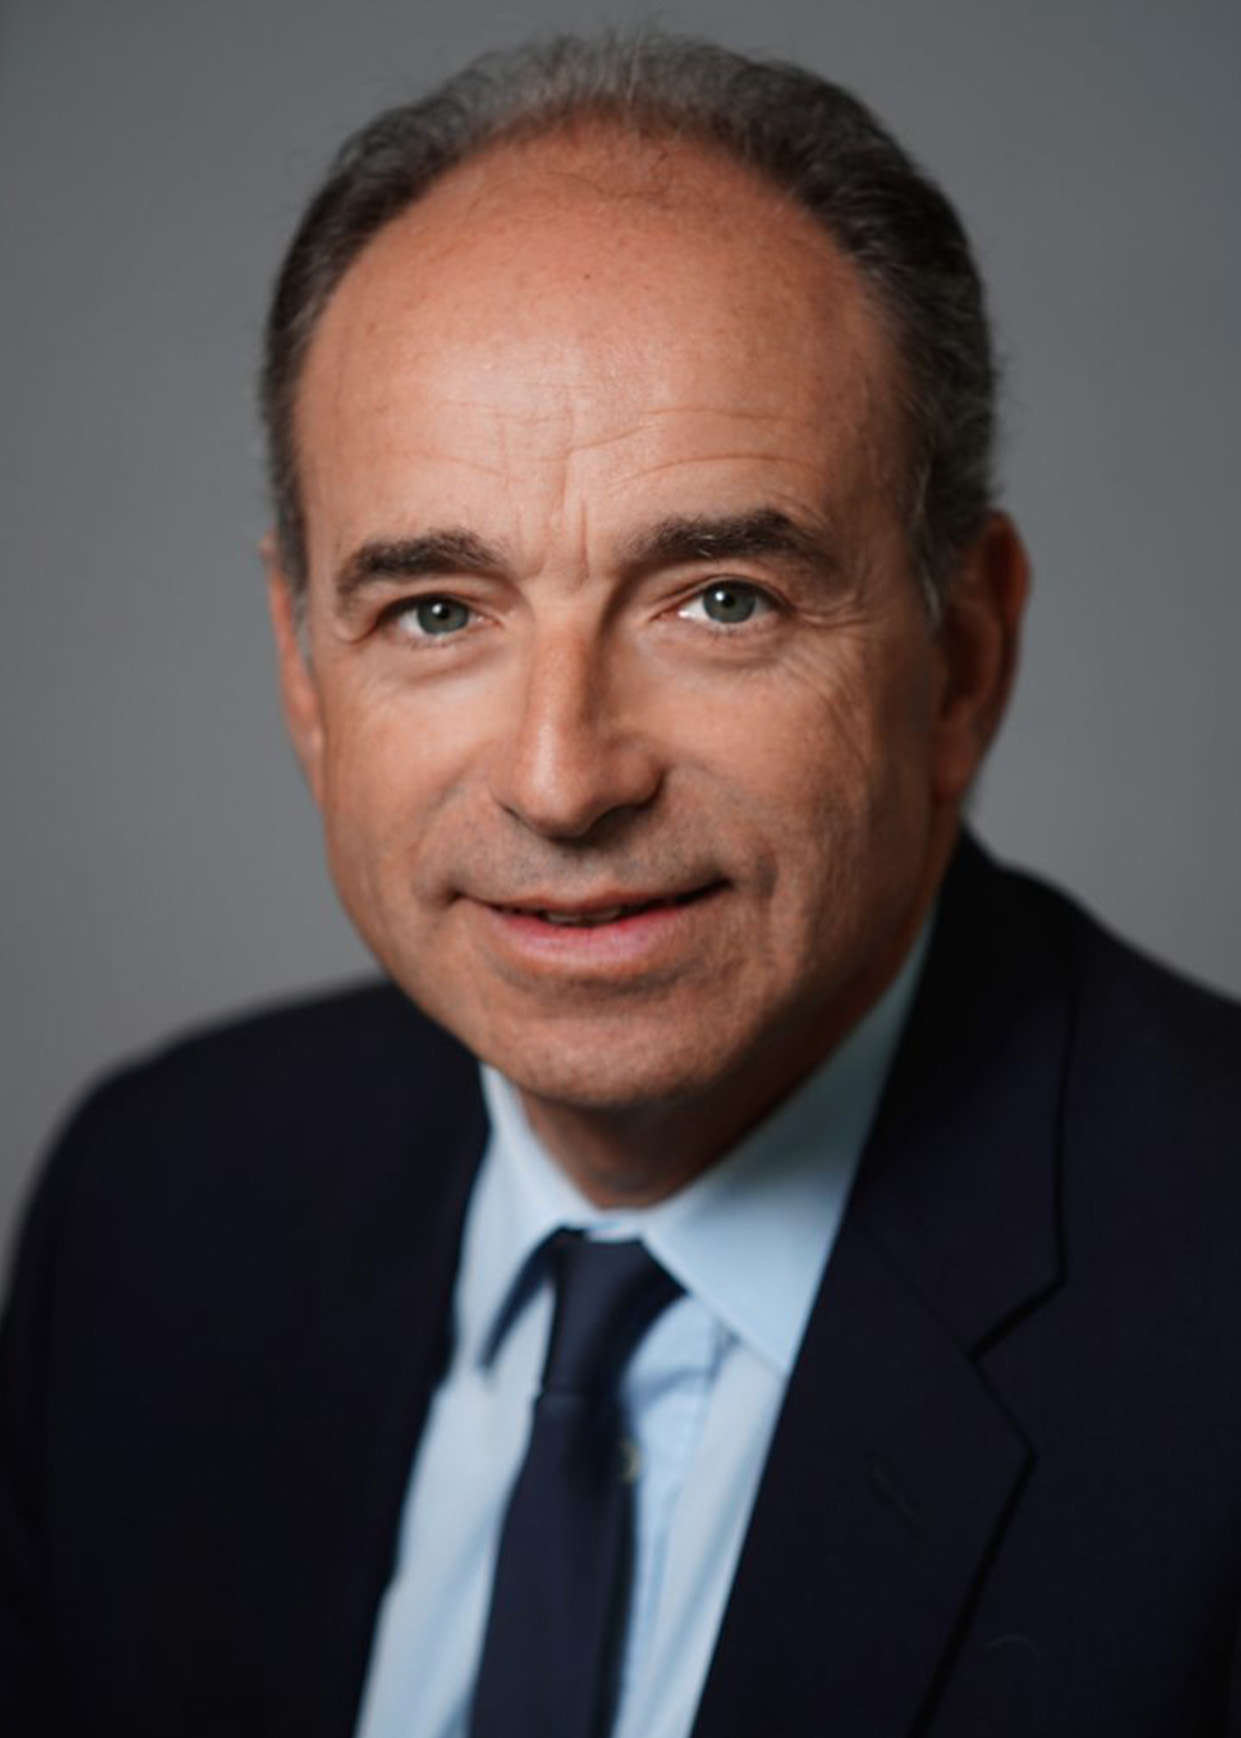 Jean-François COPÉ